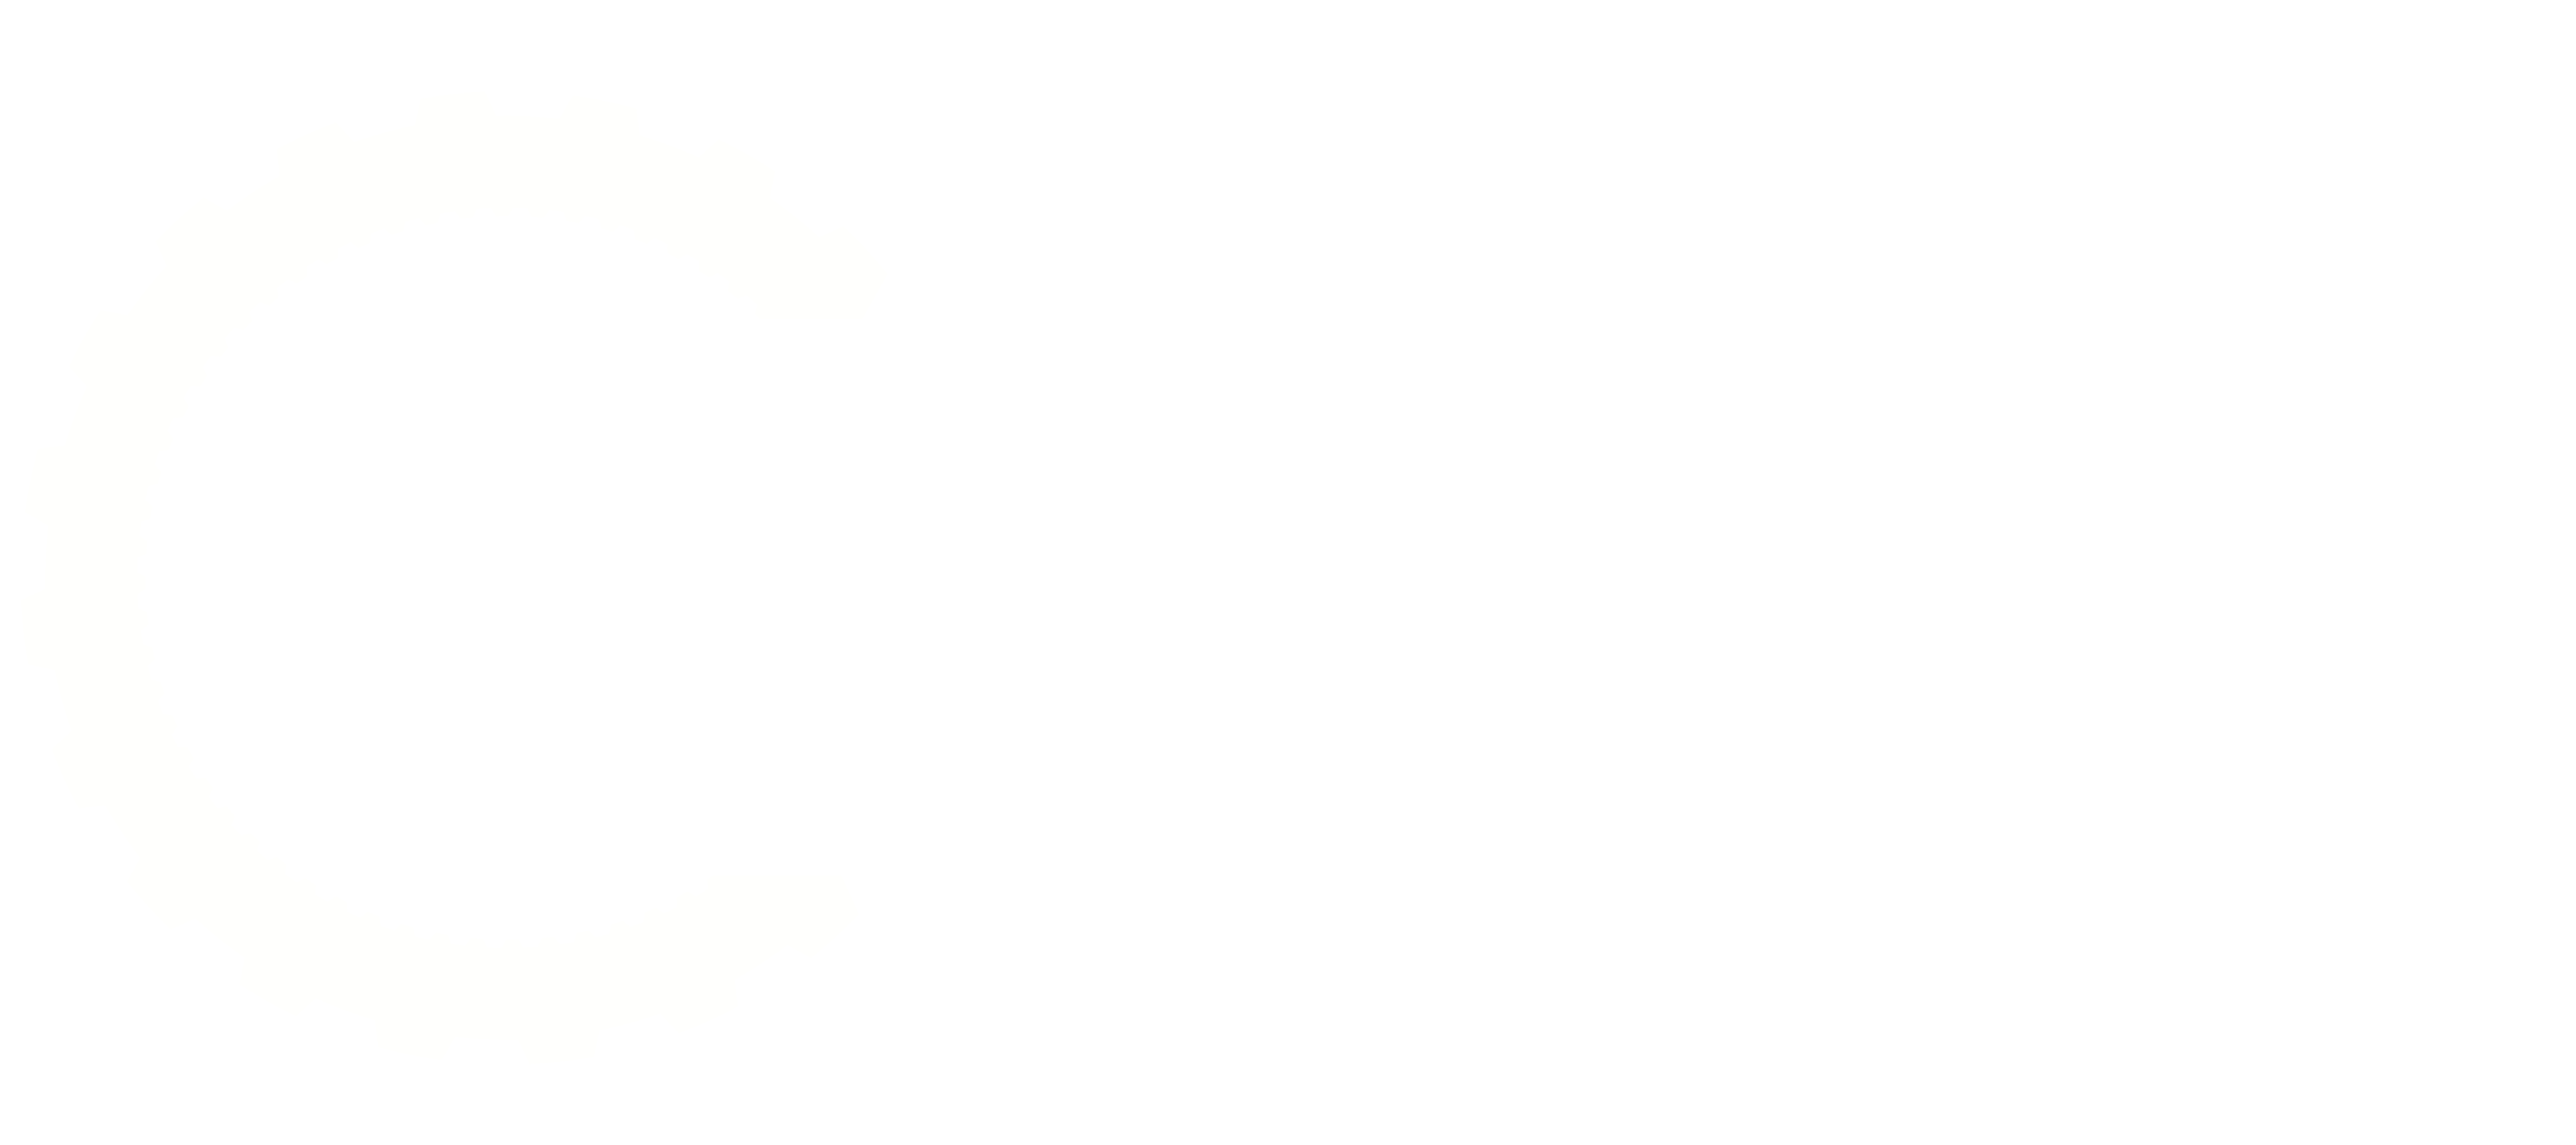 BBC TopGear India